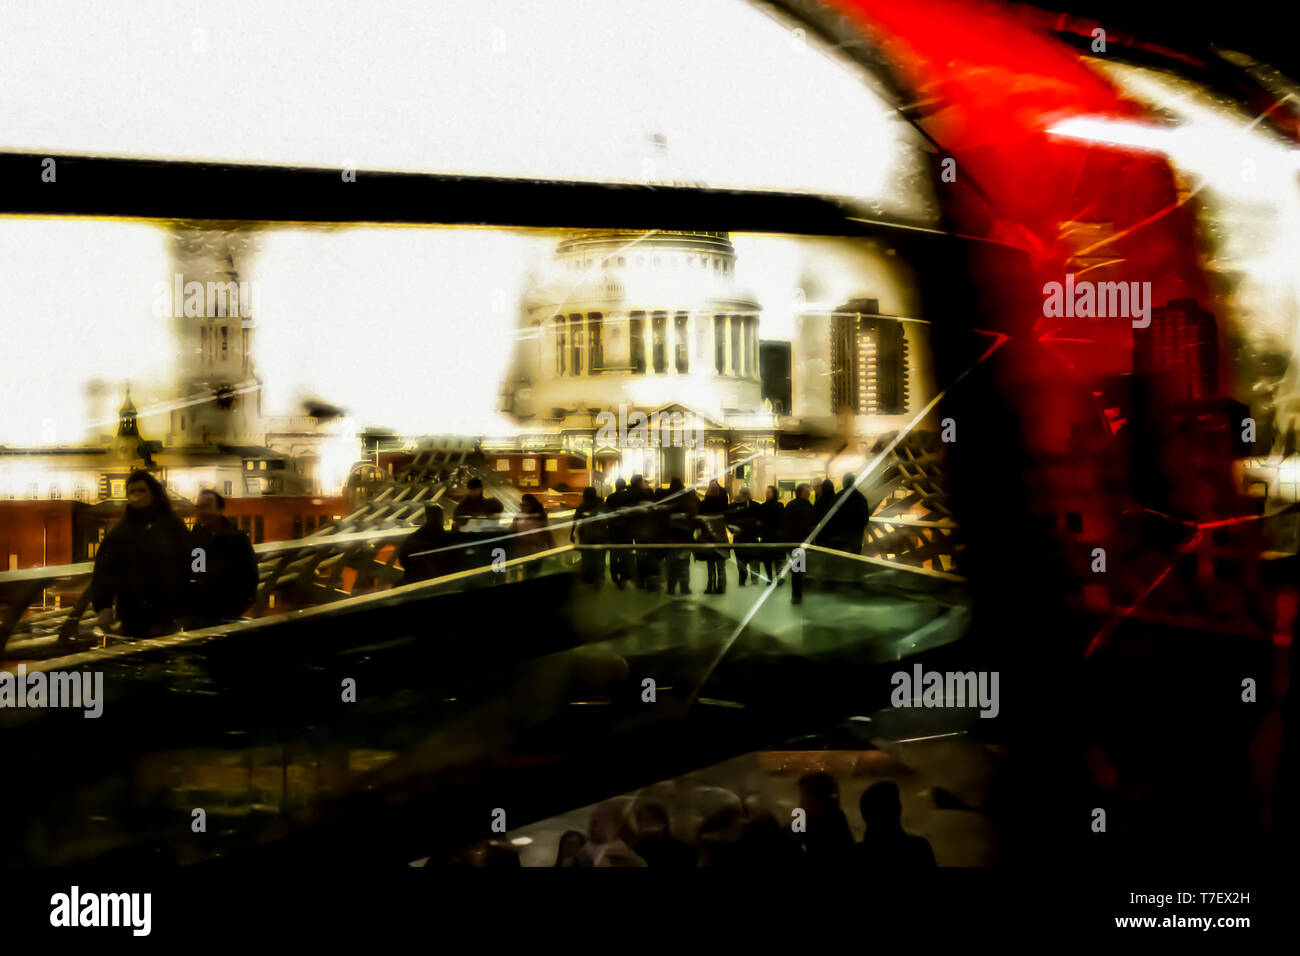 Montage von London mit Blick durch ein Fenster einer U-Bahn, während die Menschen über die Millennium Bridge in Richtung St. Paul's Cathedral laufen Stockfoto